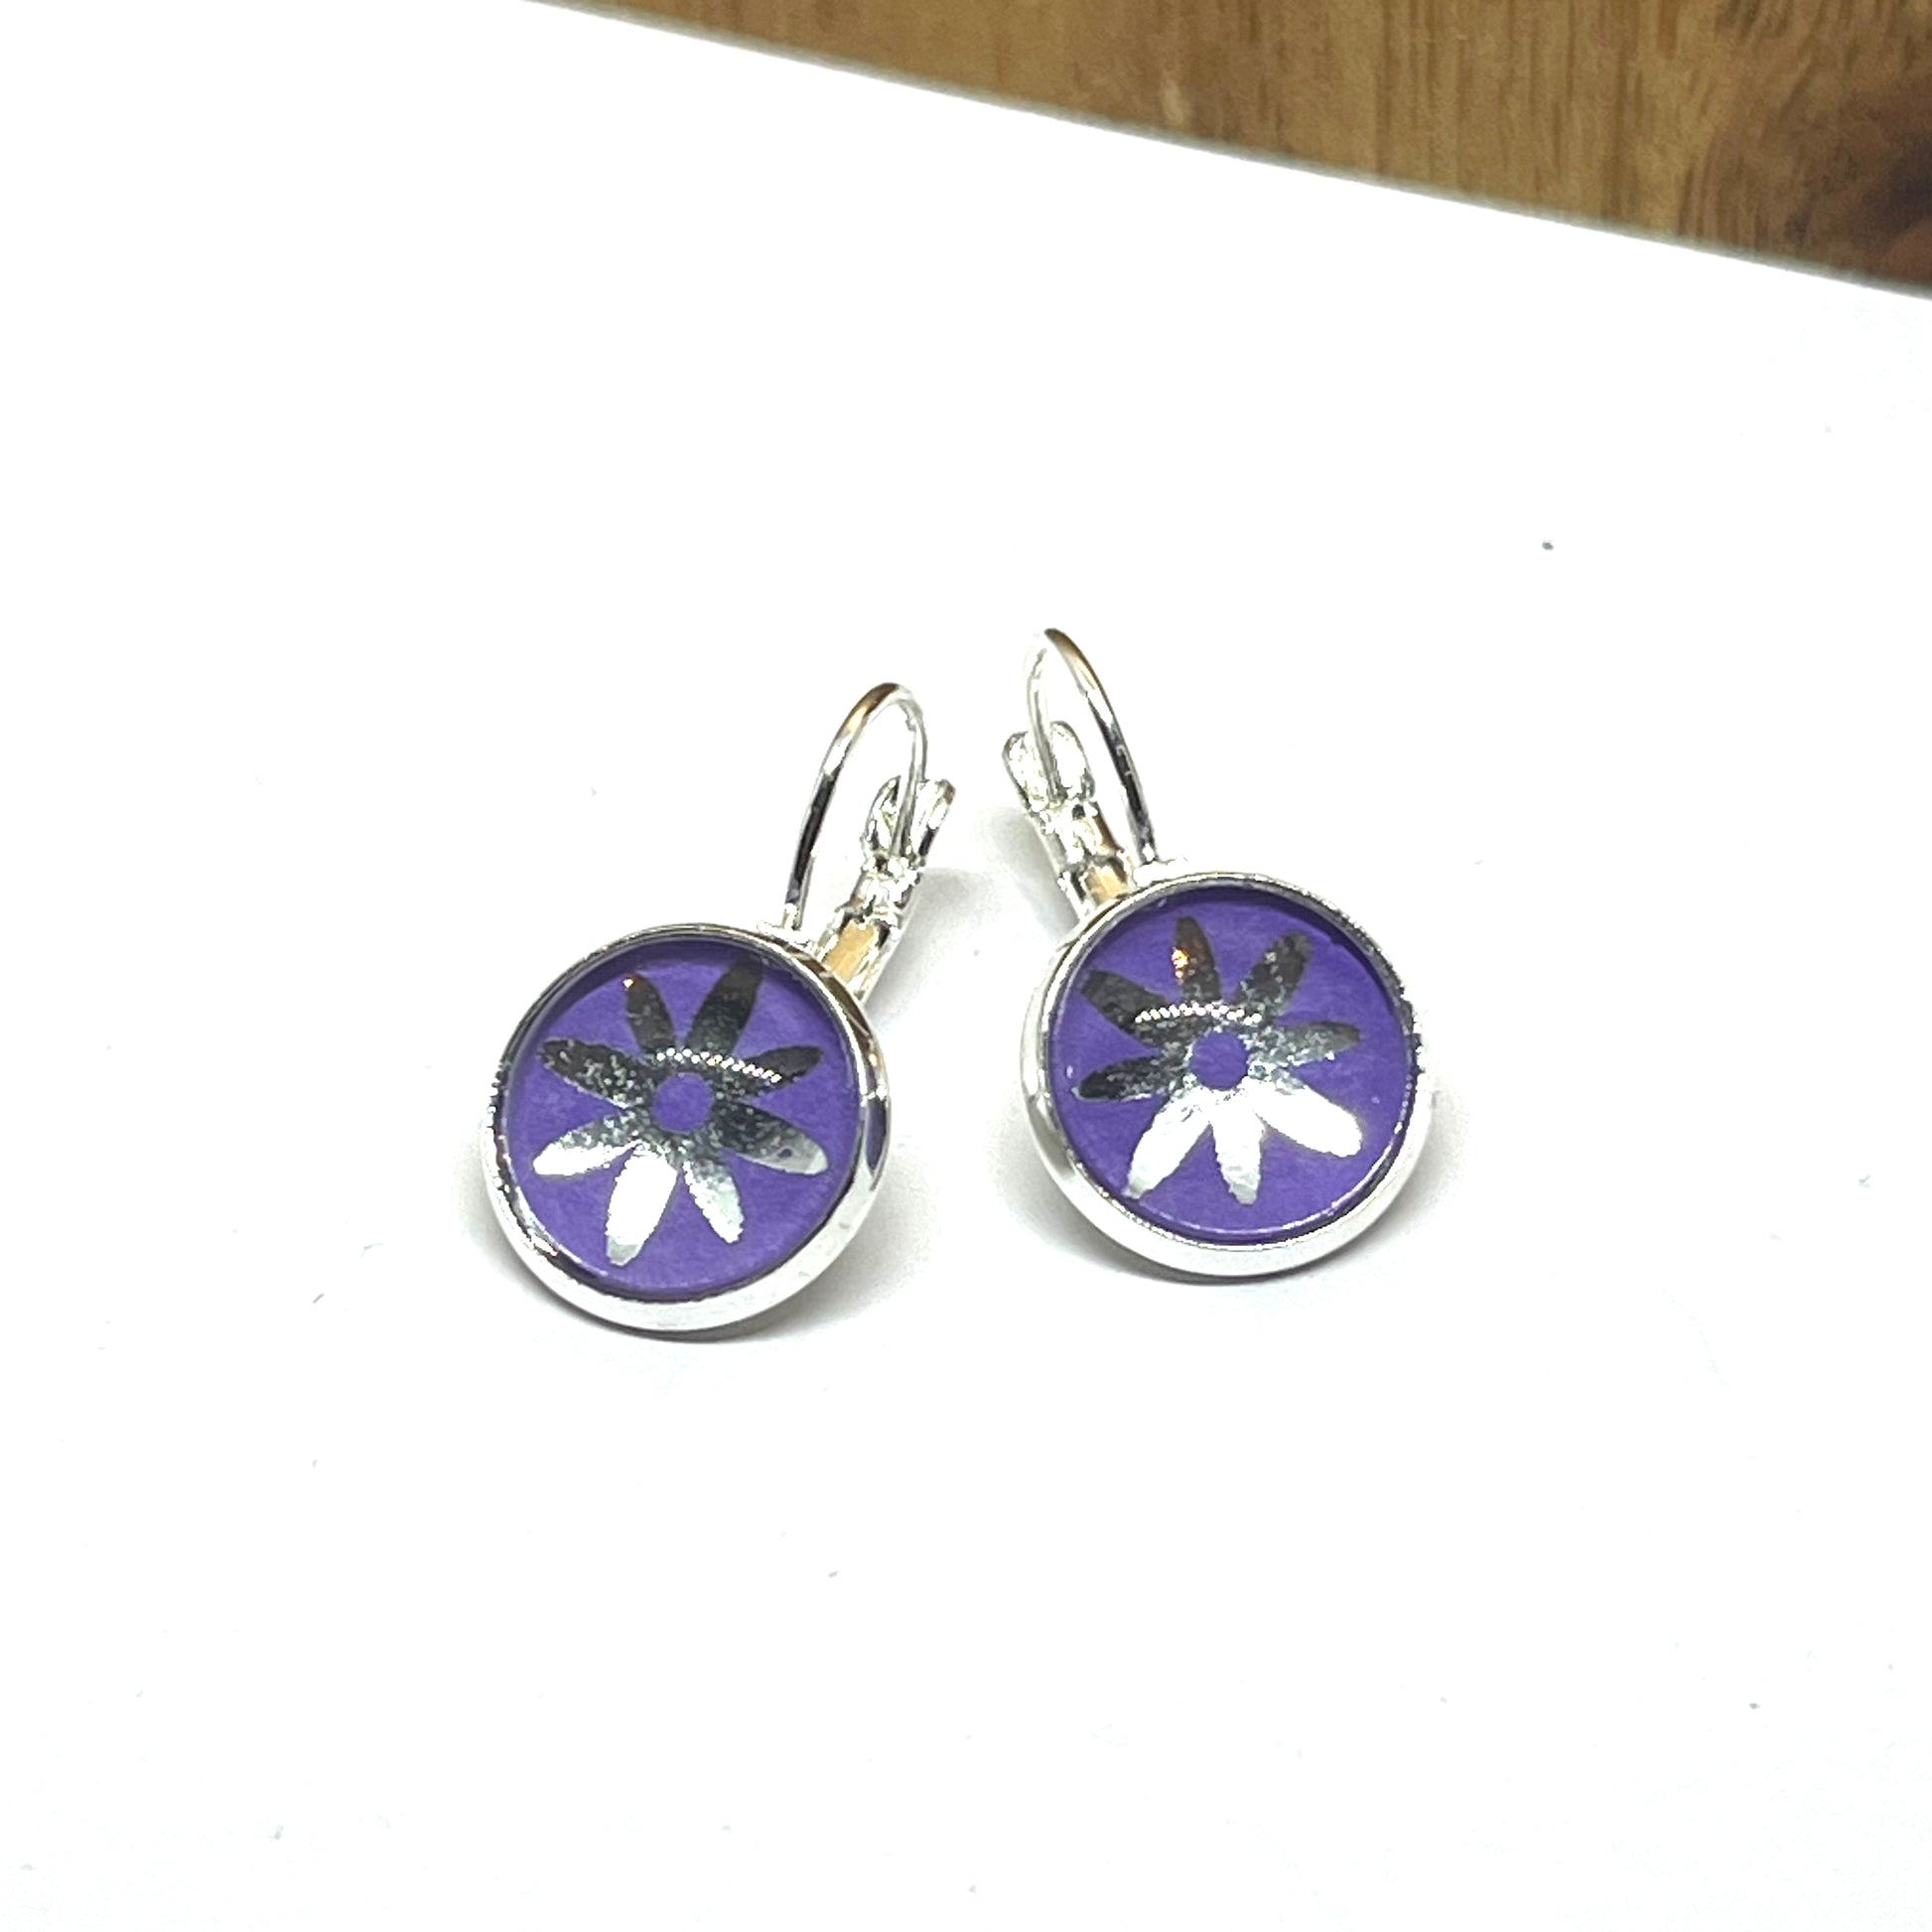 Silver daisy on purple glass dome earrings